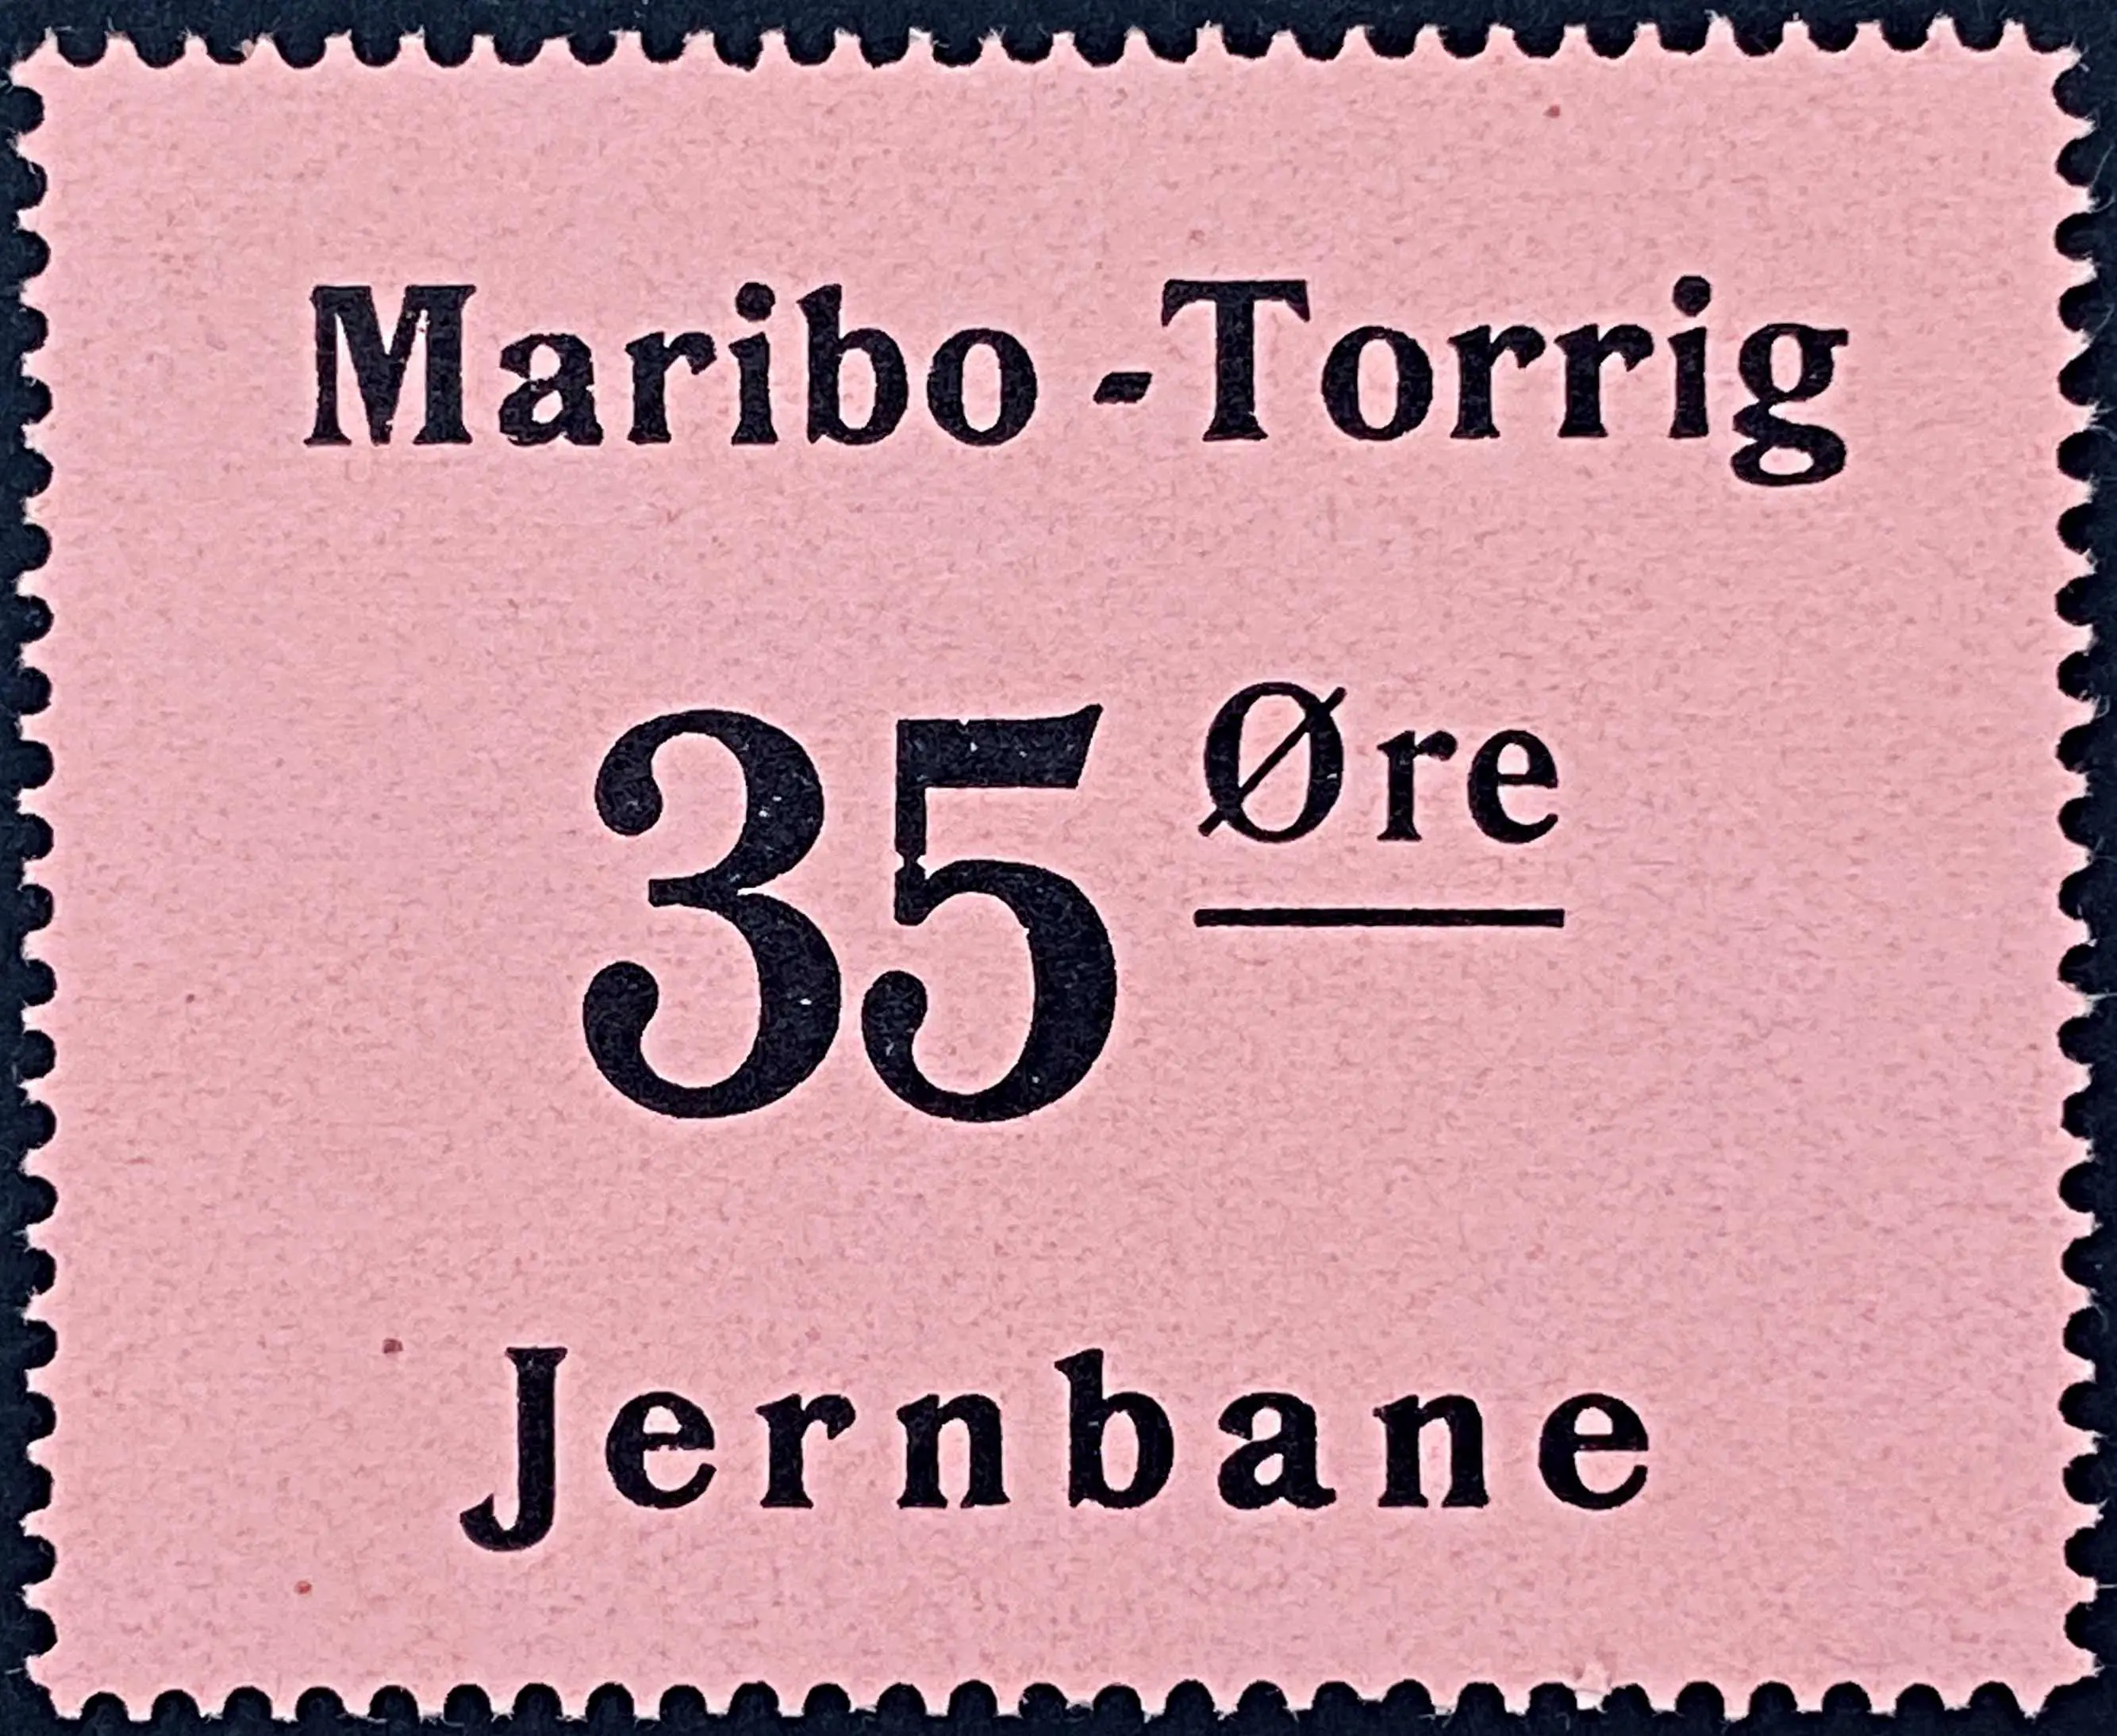 MTJ 9 - 35 Øre - Sort på lyserød papir.